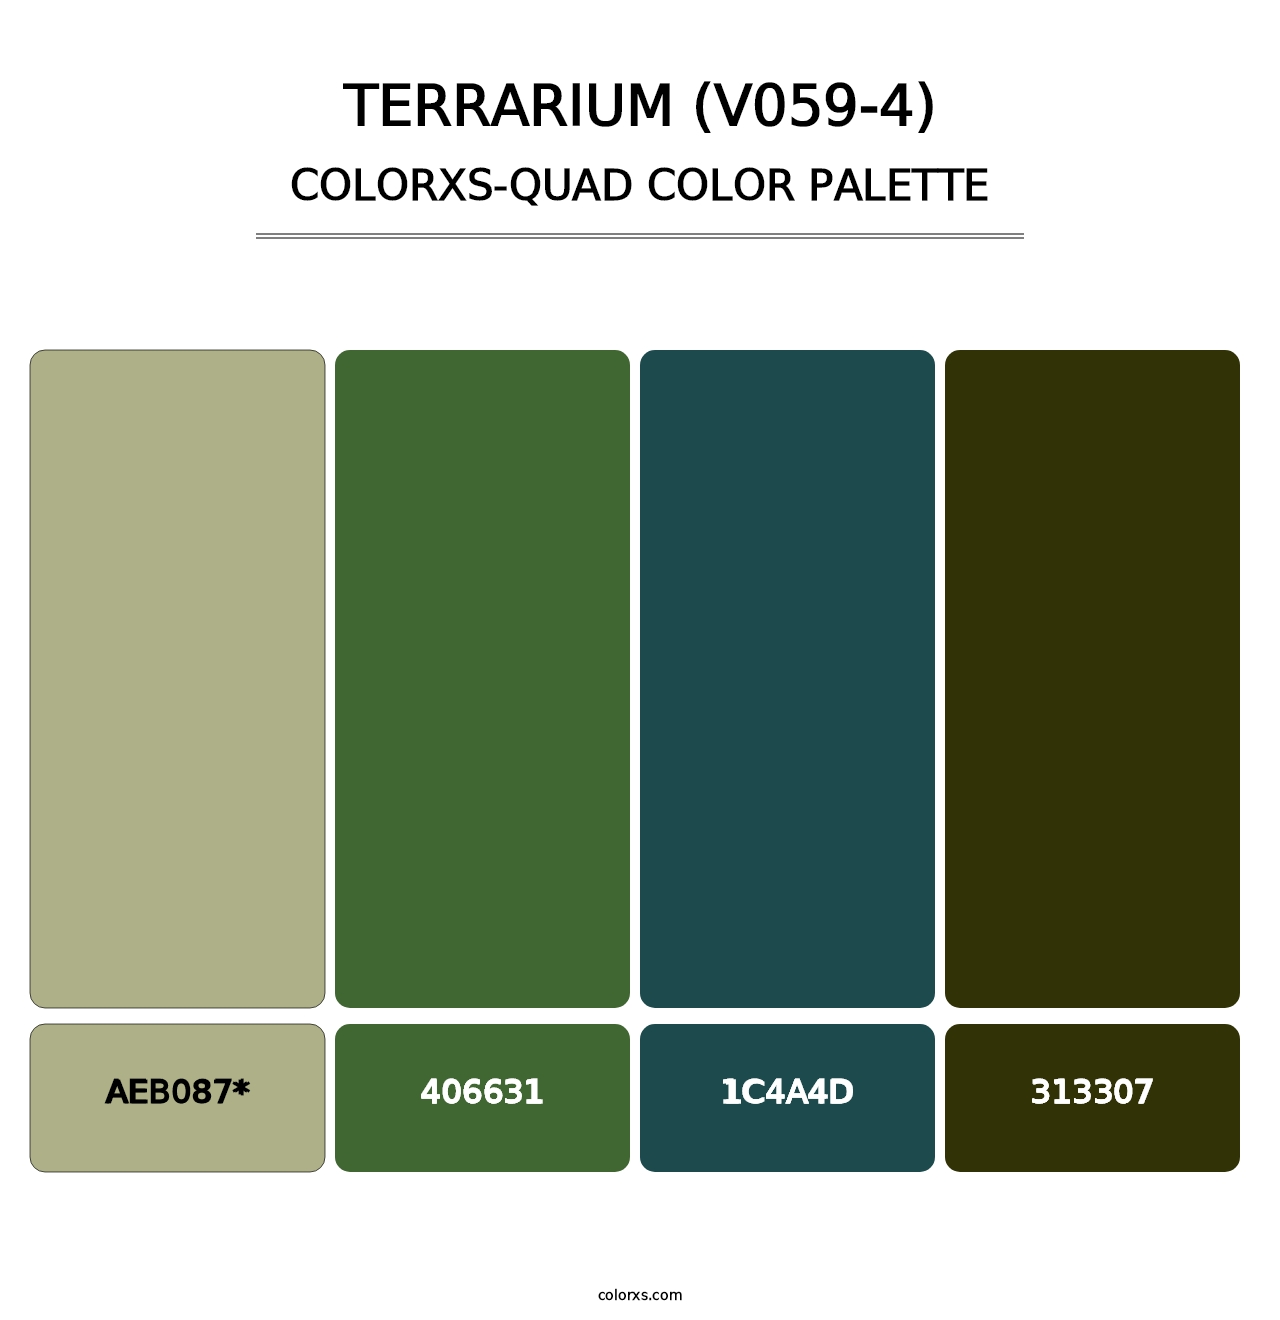 Terrarium (V059-4) - Colorxs Quad Palette